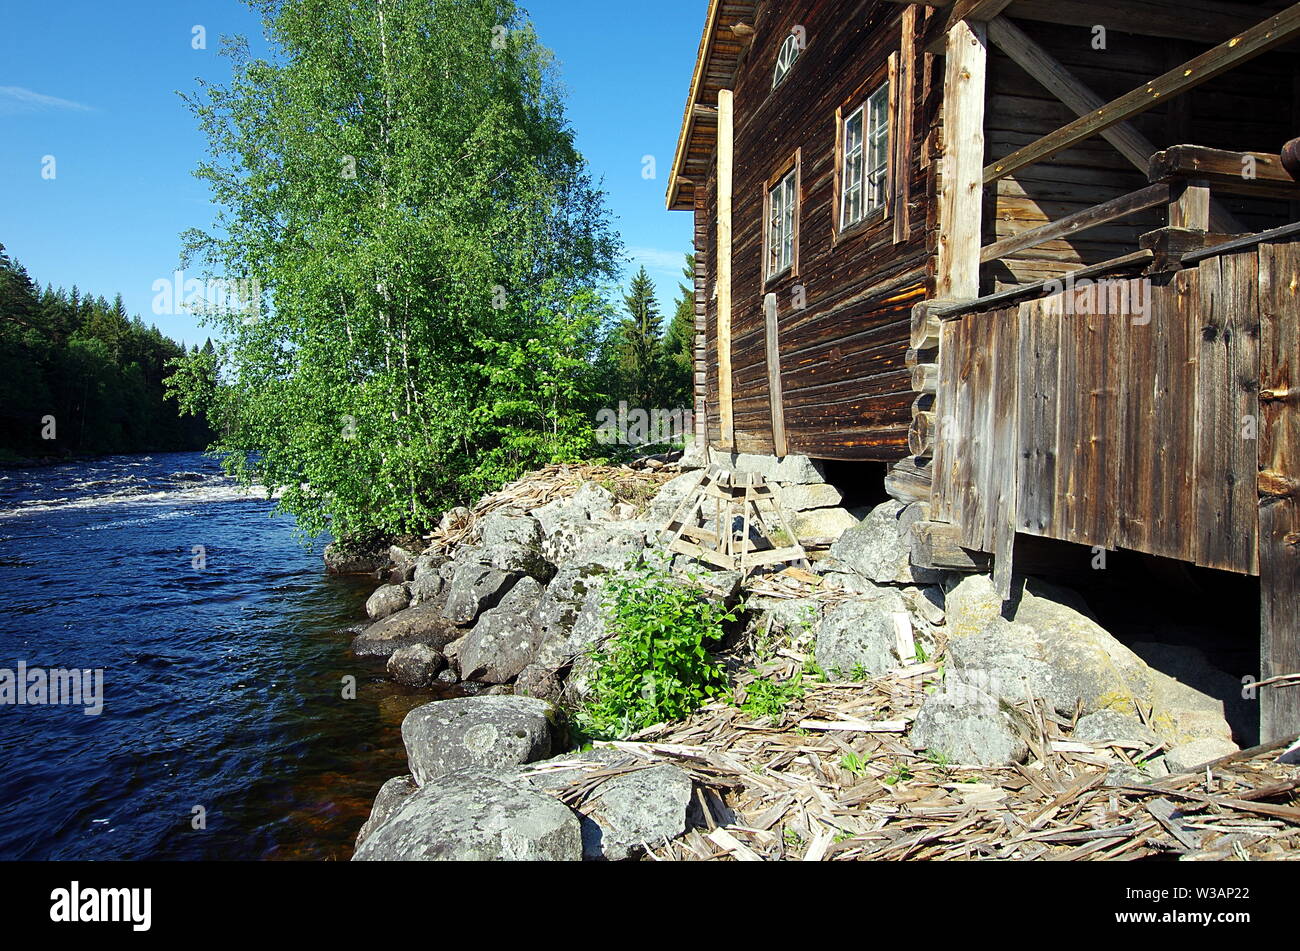 Il vecchio e abbandonato mulino Utanheds nel Vansbro Kommun di Dalarna,la Svezia è stata utilizzata per realizzare differenti fiore per pane da vari cereali. Foto Stock